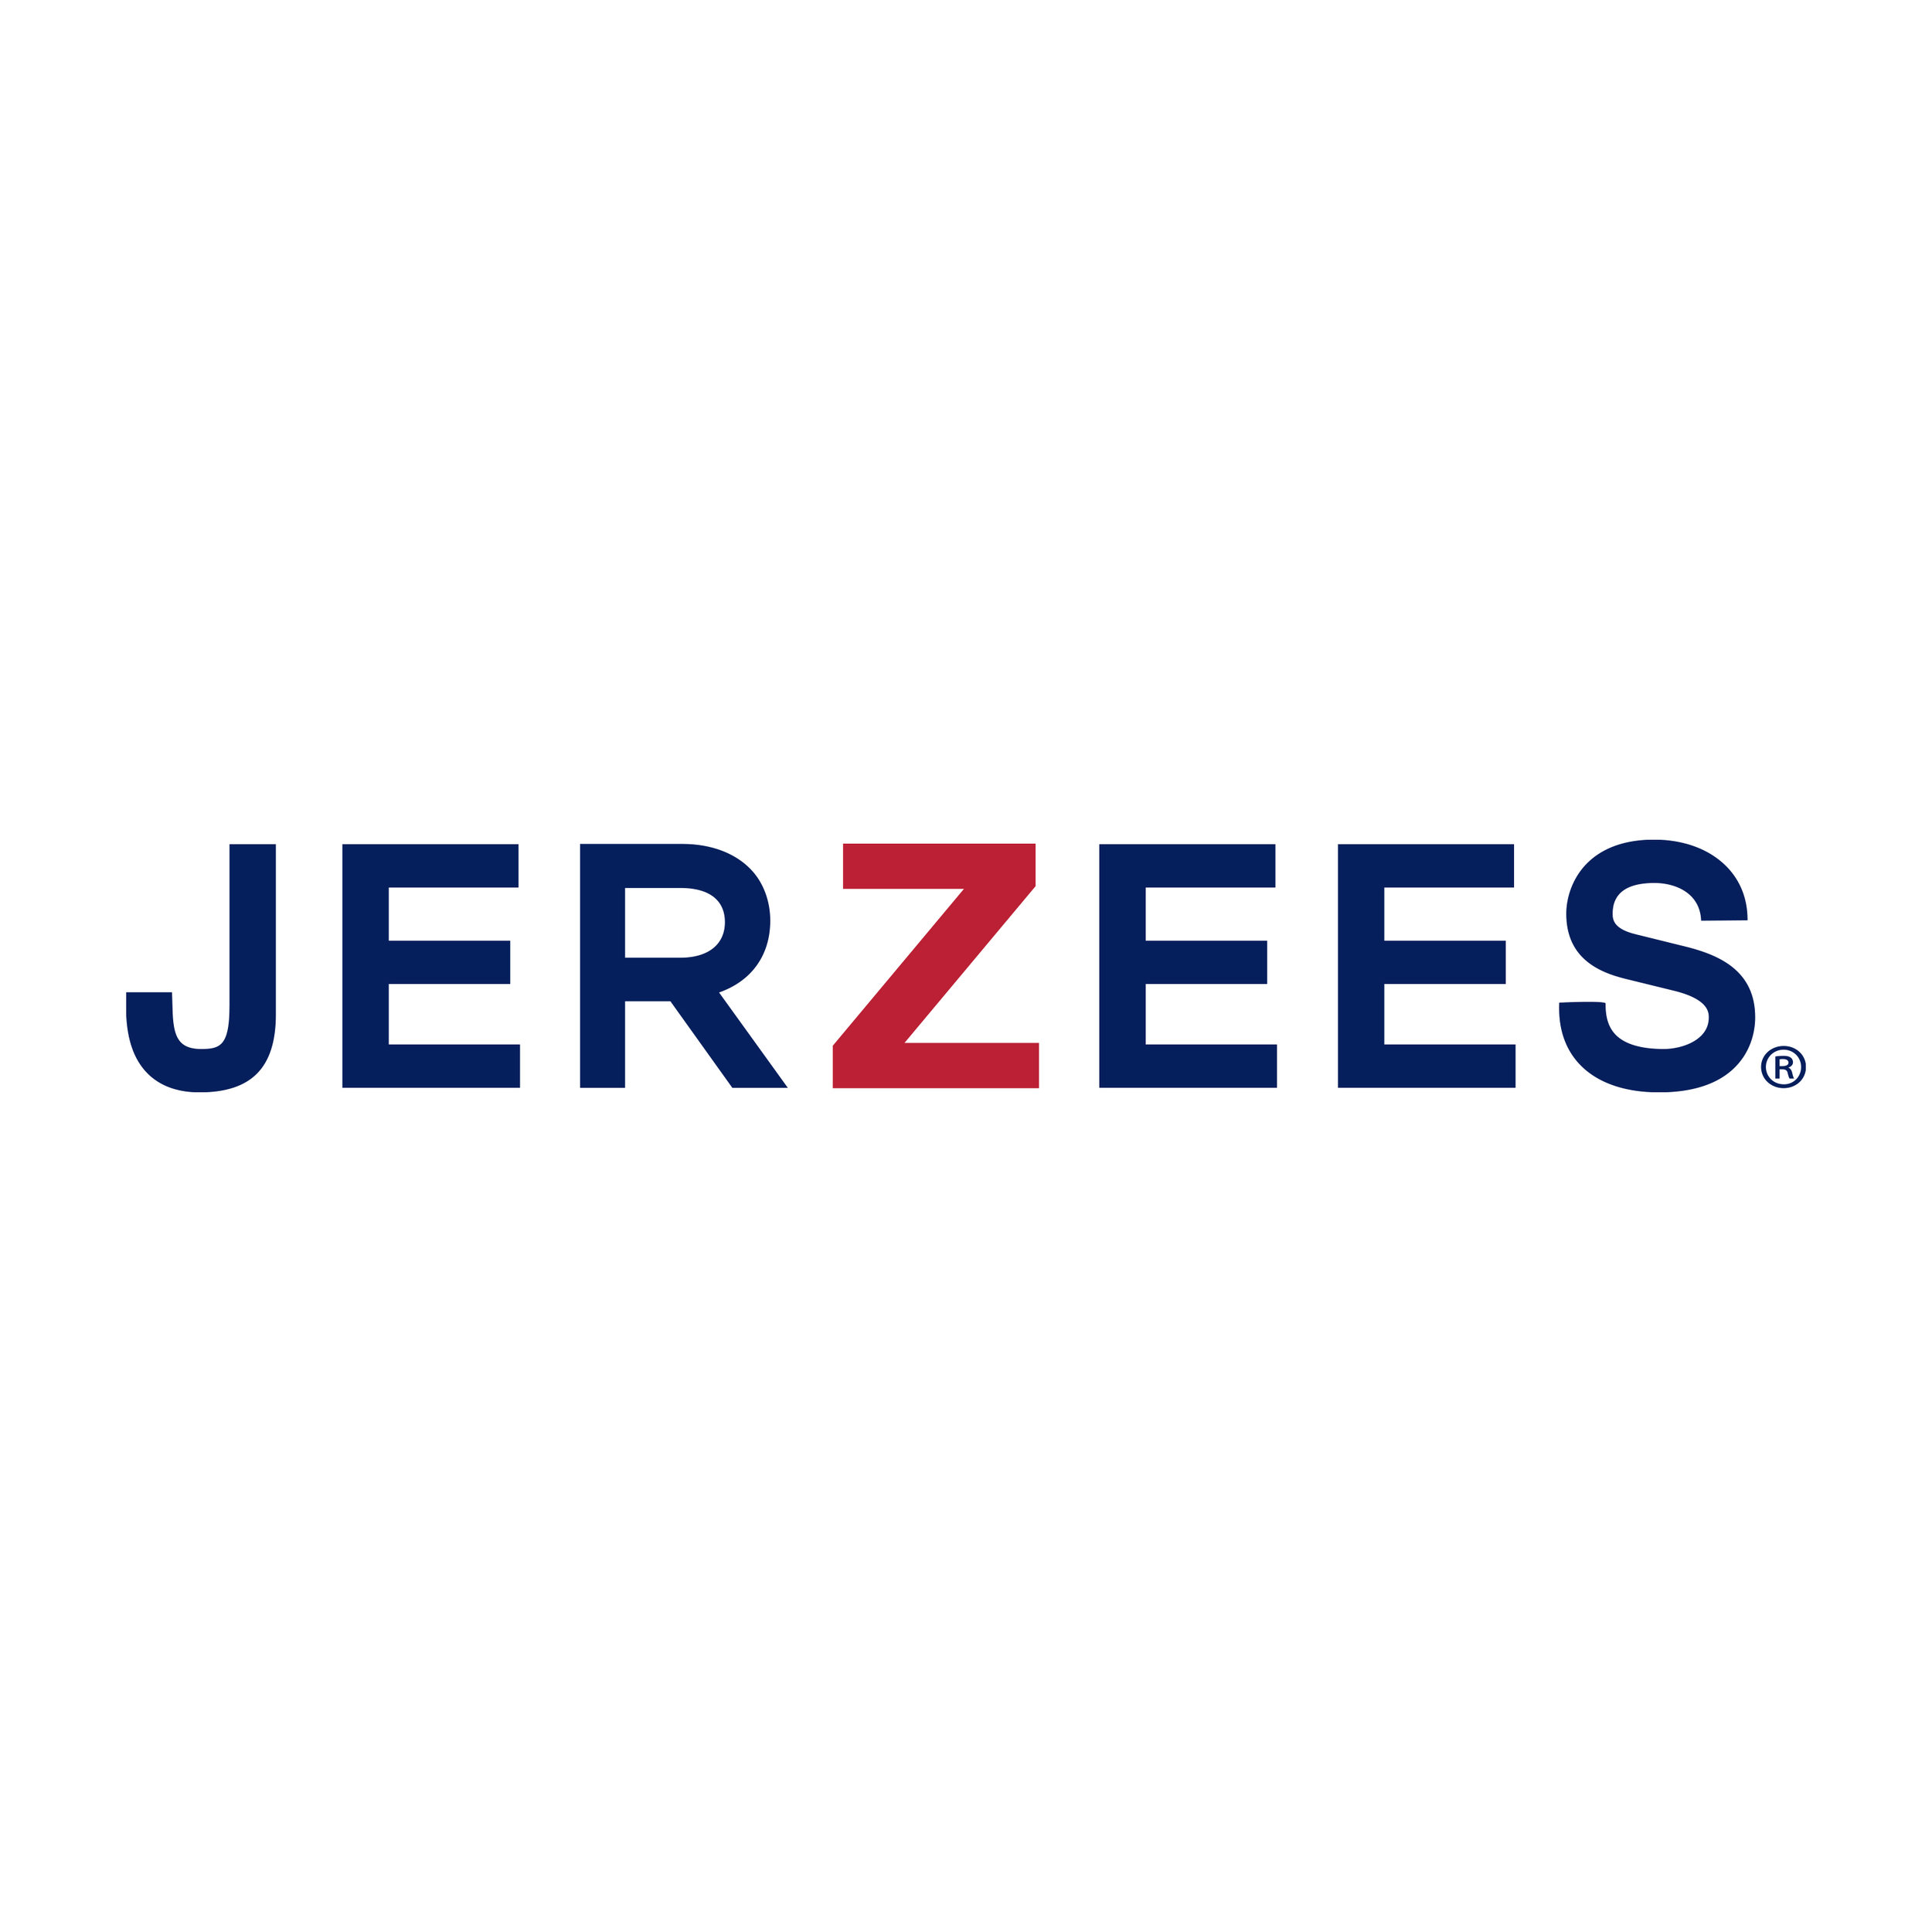 Jerzees_logo2.jpg